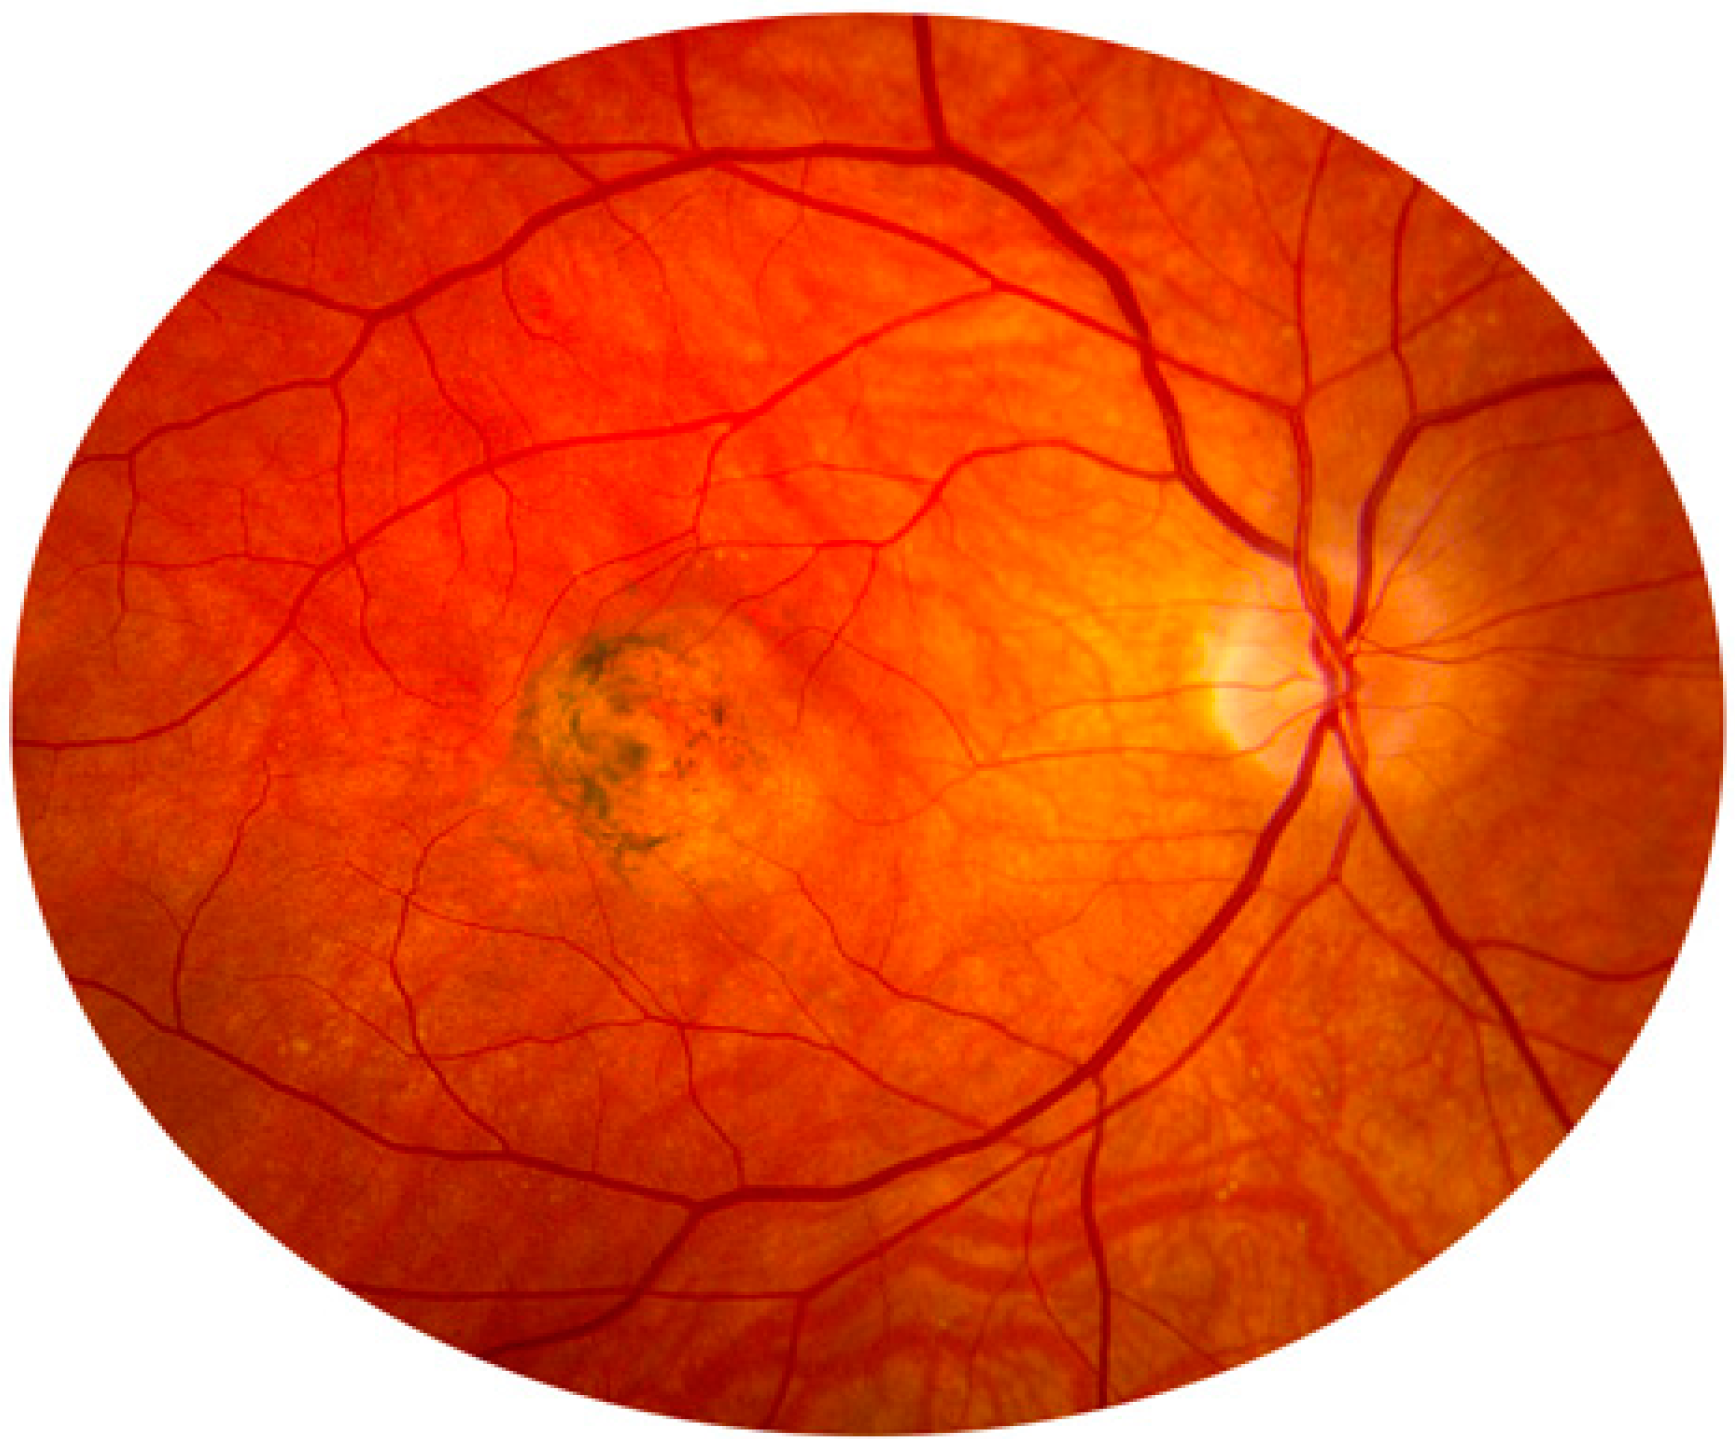 Ангиопатия сетчатки мкб 10. Ишемическая нейропатия зрительного нерва. Ишемическая оптикопатия зрительного нерва. Задняя ишемическая нейропатия зрительного нерва. Дистрофия глазного дна Сорсби.